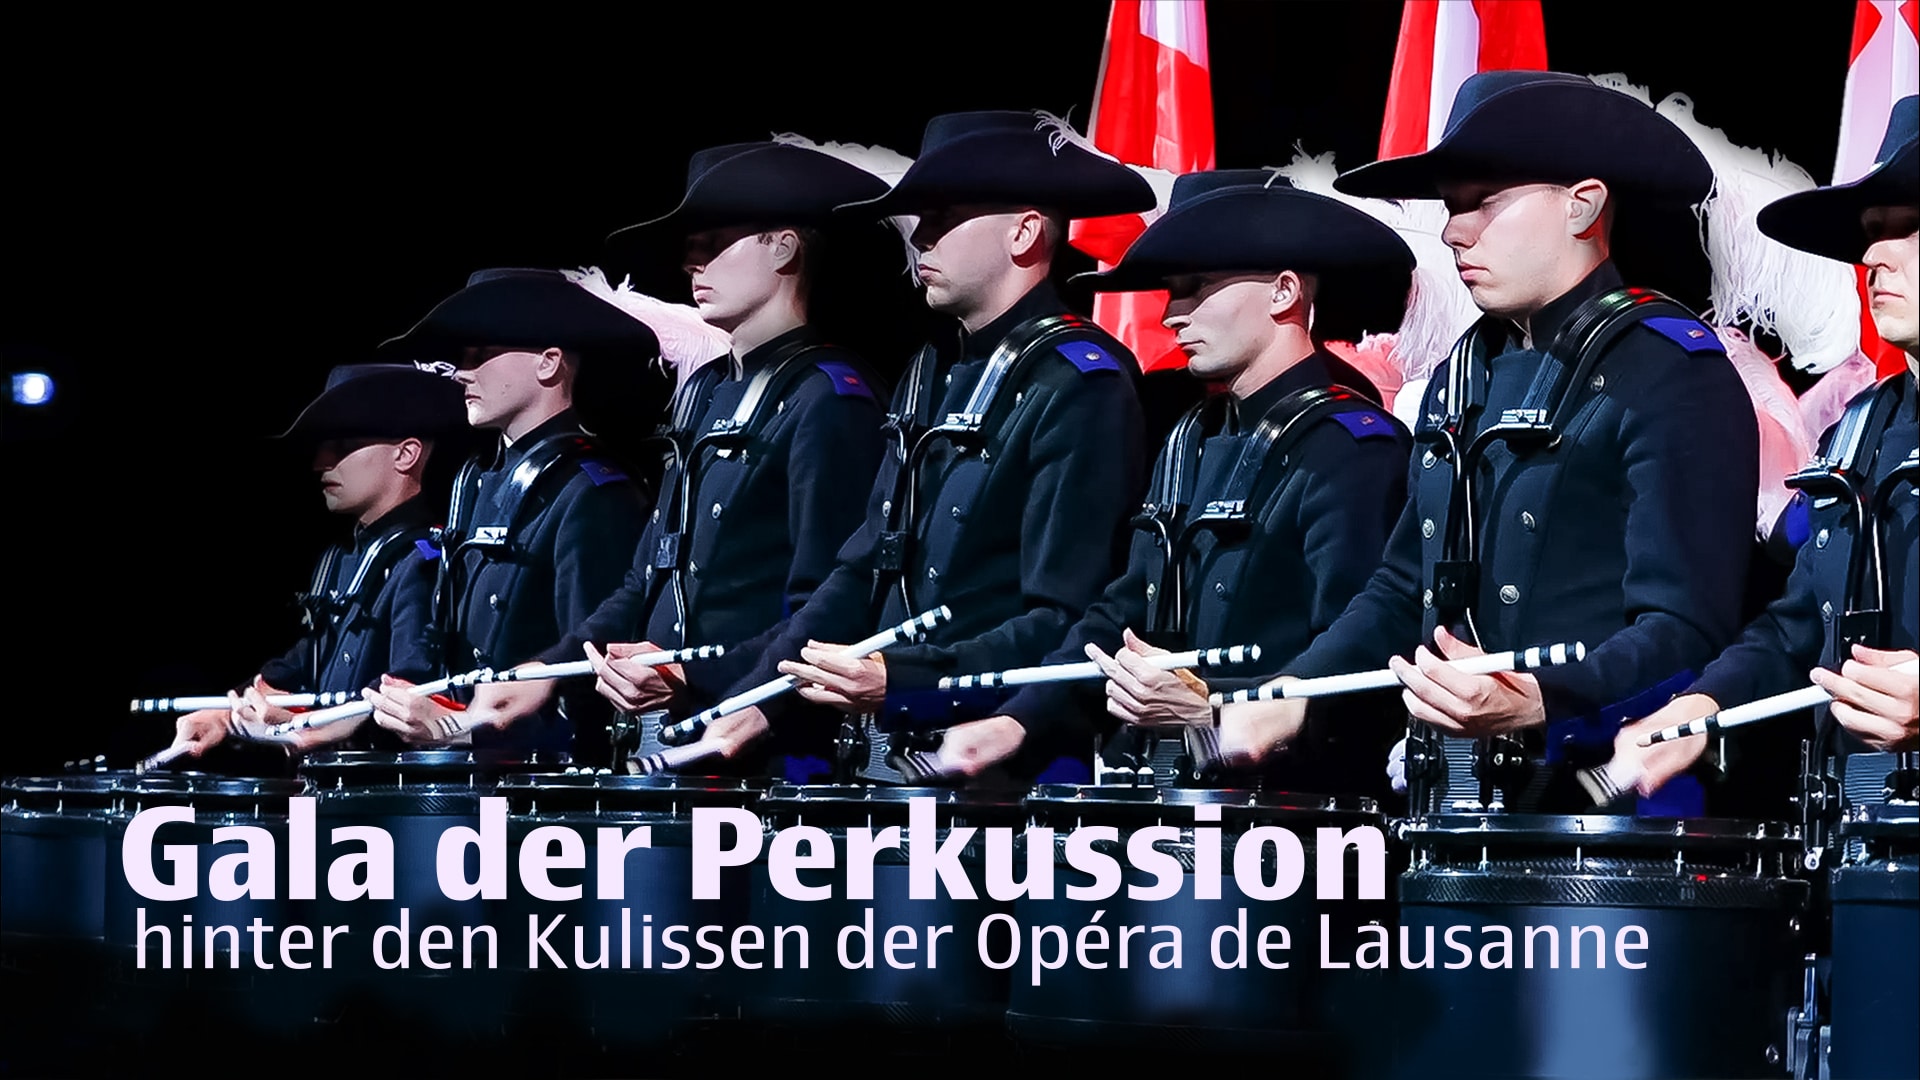 Gala der Perkussion, hinter den Kulissen der Opéra de Lausanne